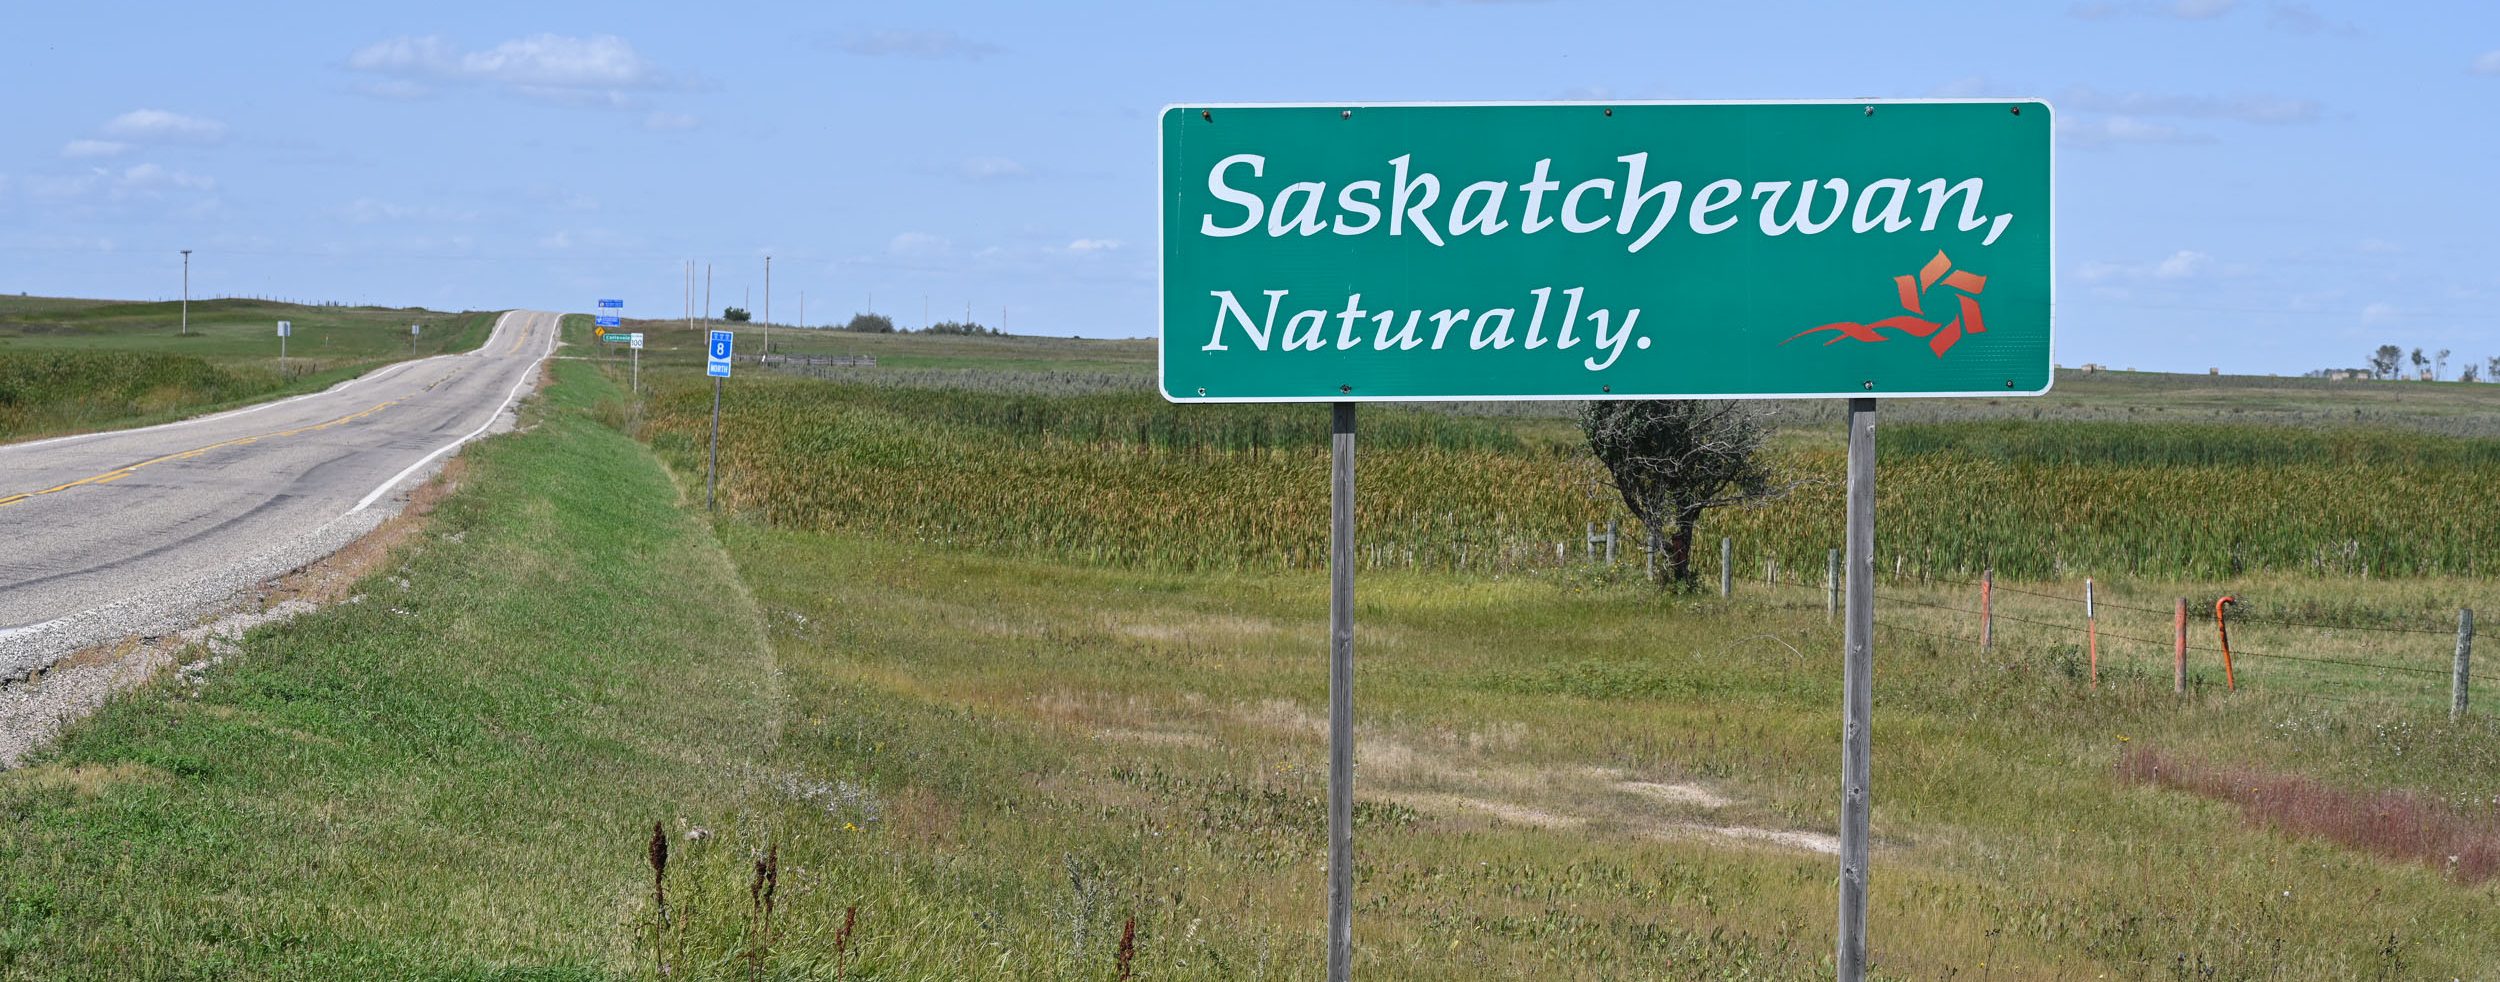 Willkommen in Saskatchewan